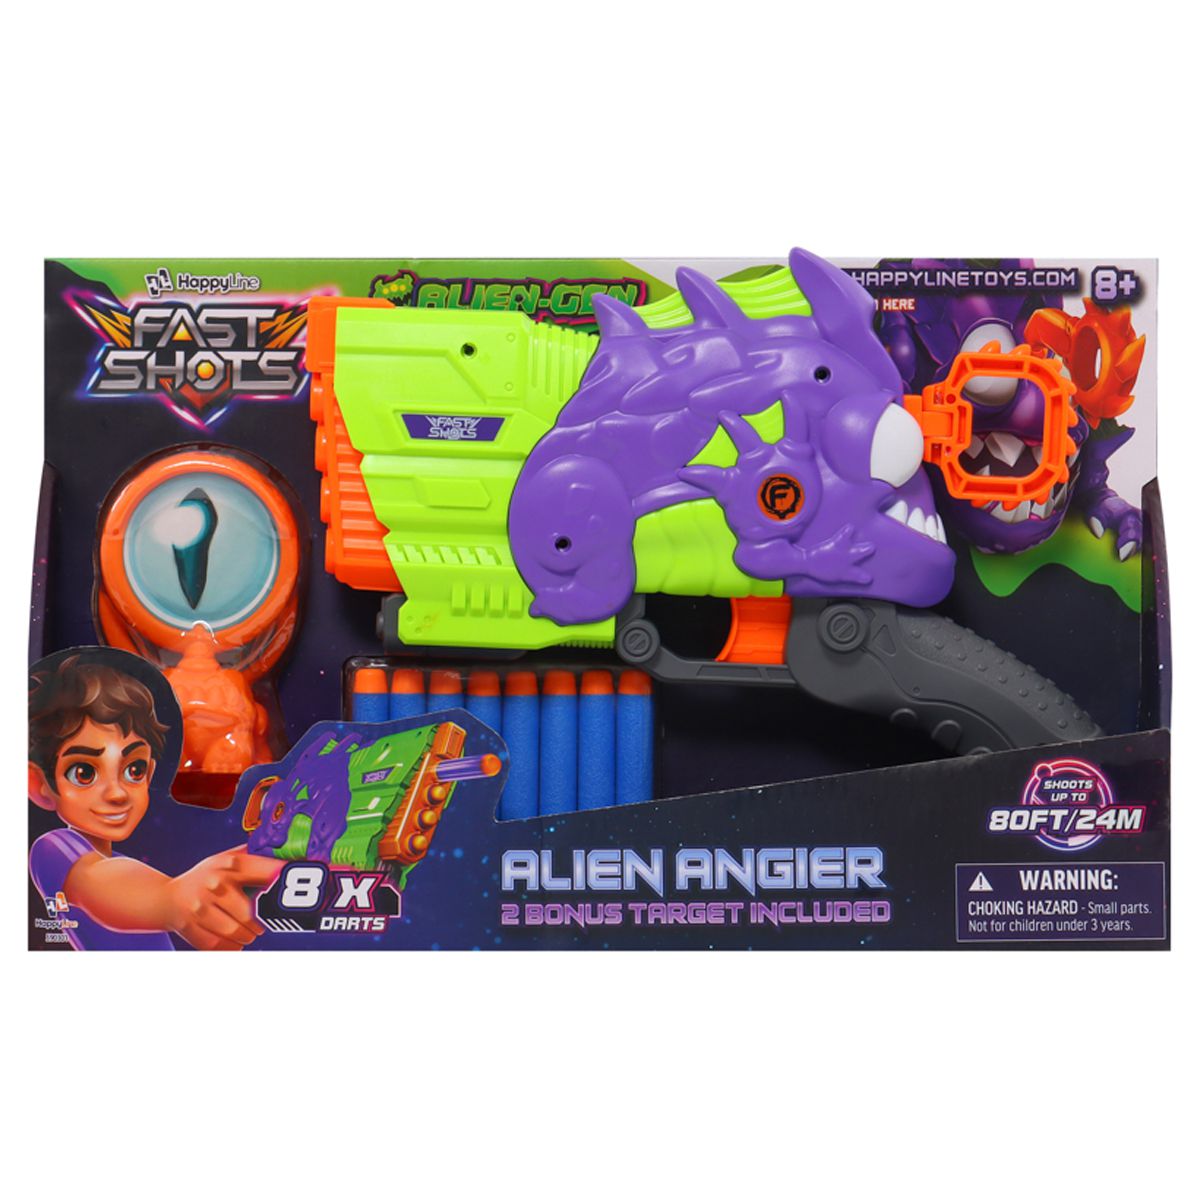 Fast Shots® Alien Gen Dart Blaster | Alien Angler | Blast Dart up to 24m (80ft) | 8 Foam + 2 Bonus Targets | Outdoor | Happy Line® - image 2 of 9